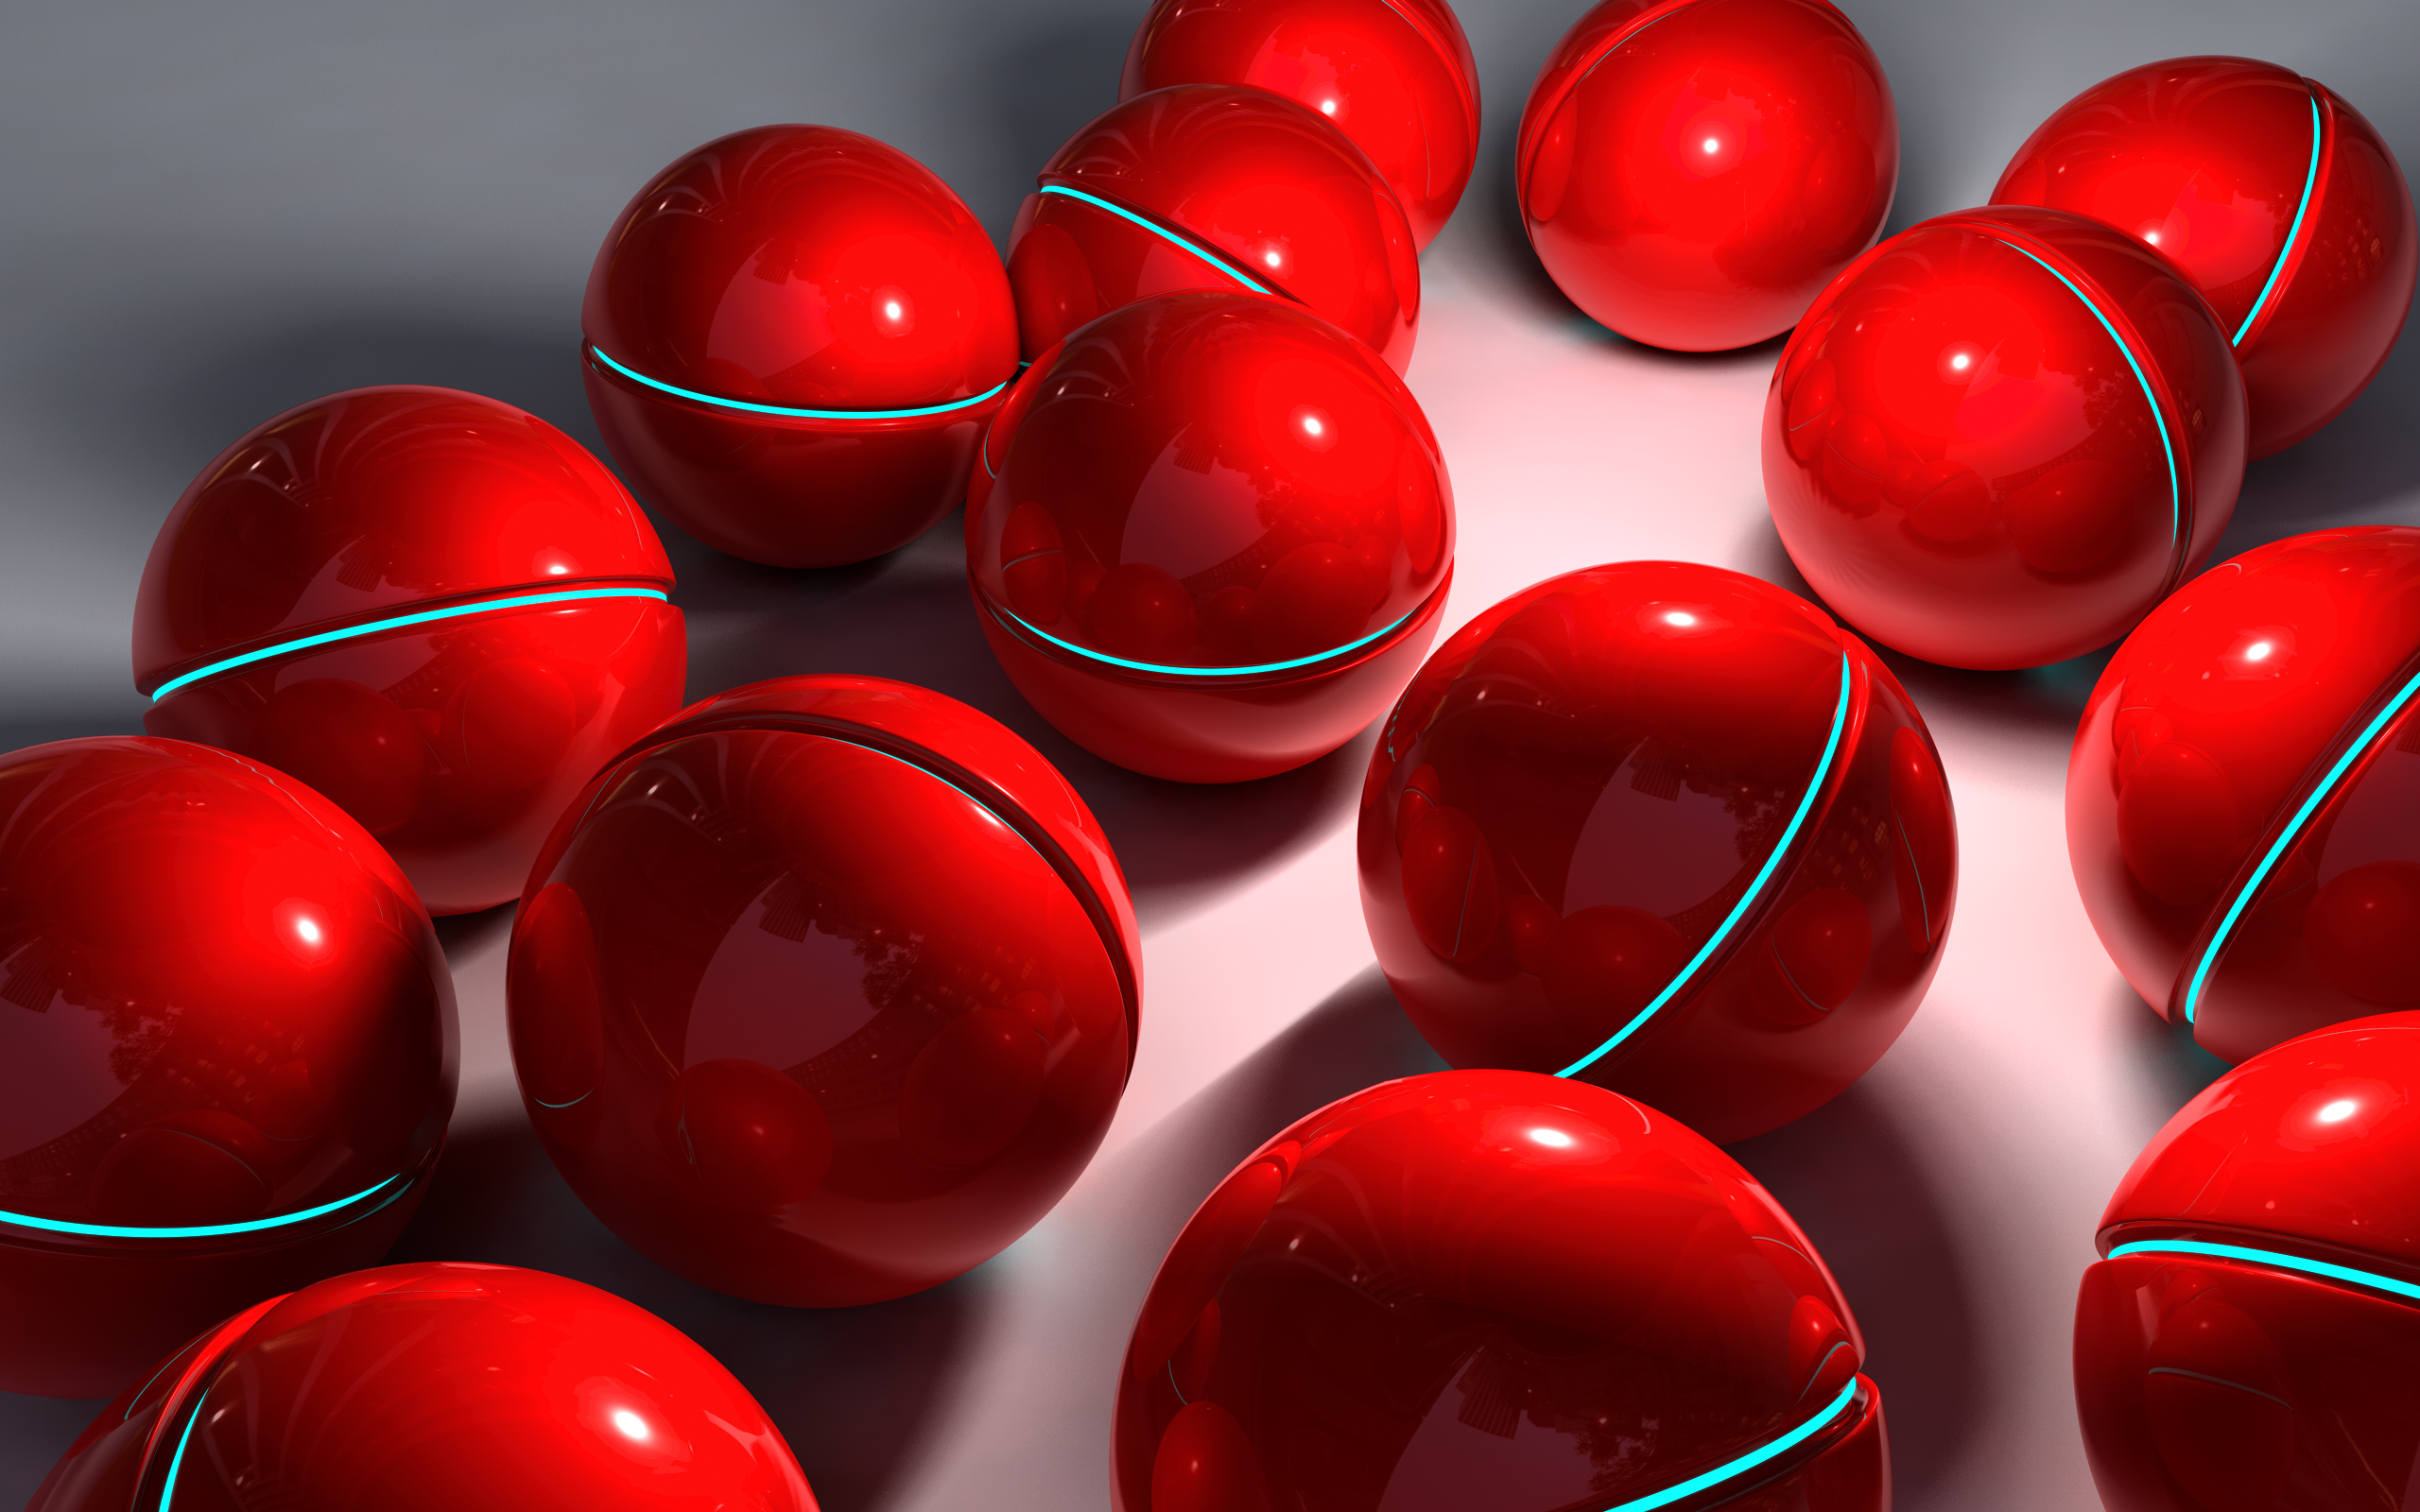 red, balls, spheres - desktop wallpaper